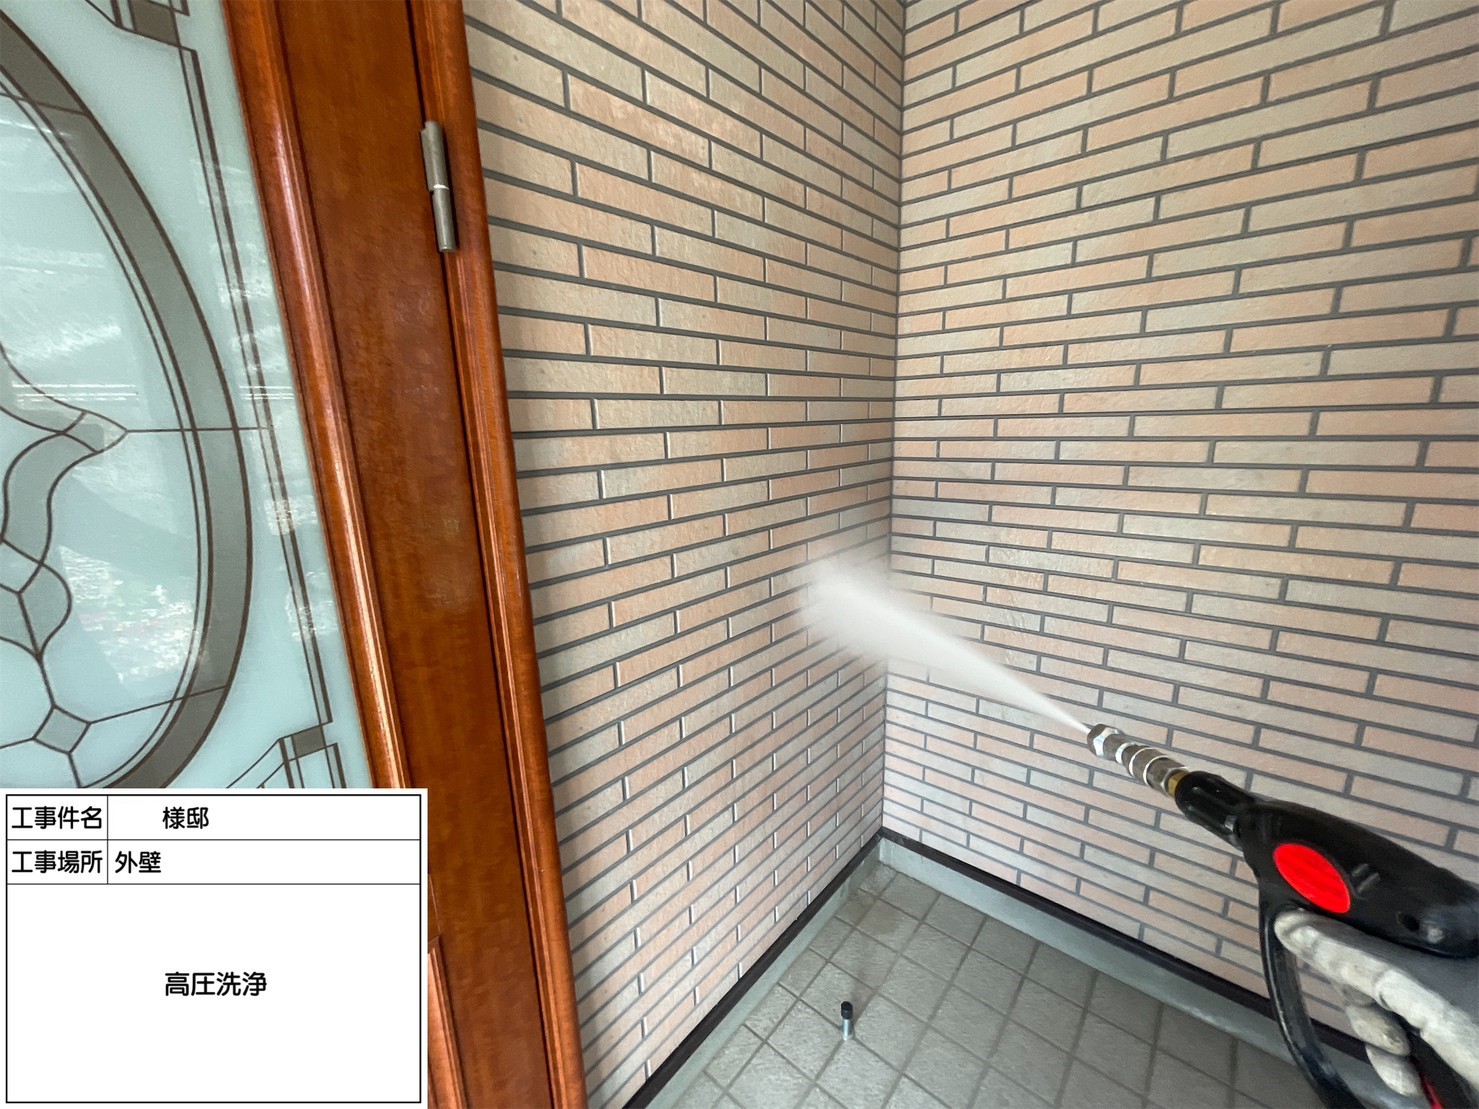 福岡県太宰府市石坂のM様邸をハウジングコート一押しの塗料を使用して外壁屋根を新築の様に塗装していきます。6/17着工です。【ご来店より】